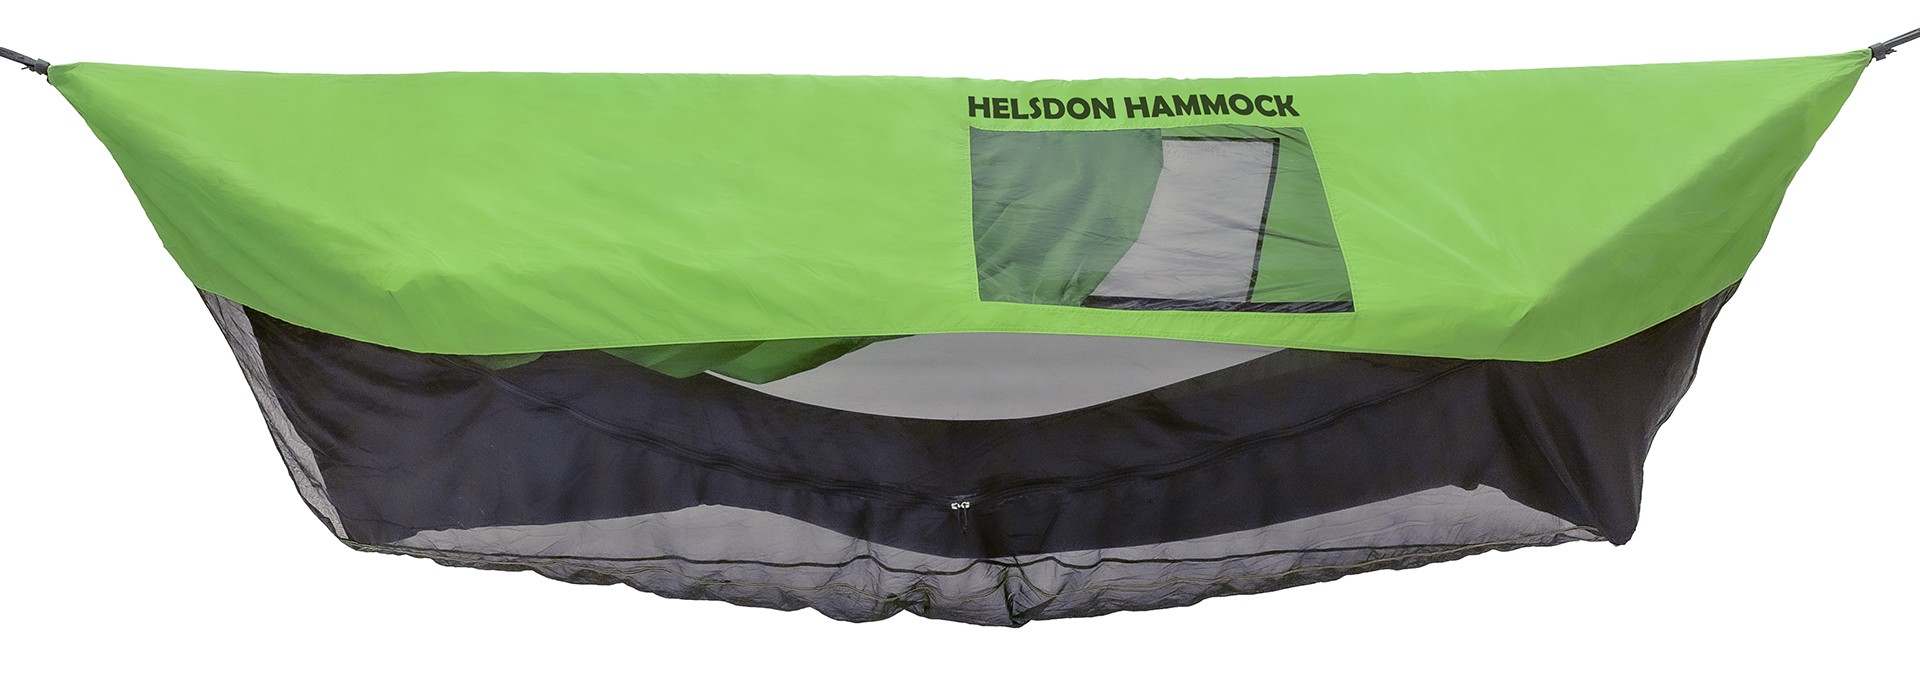 The Helsdon Hammock